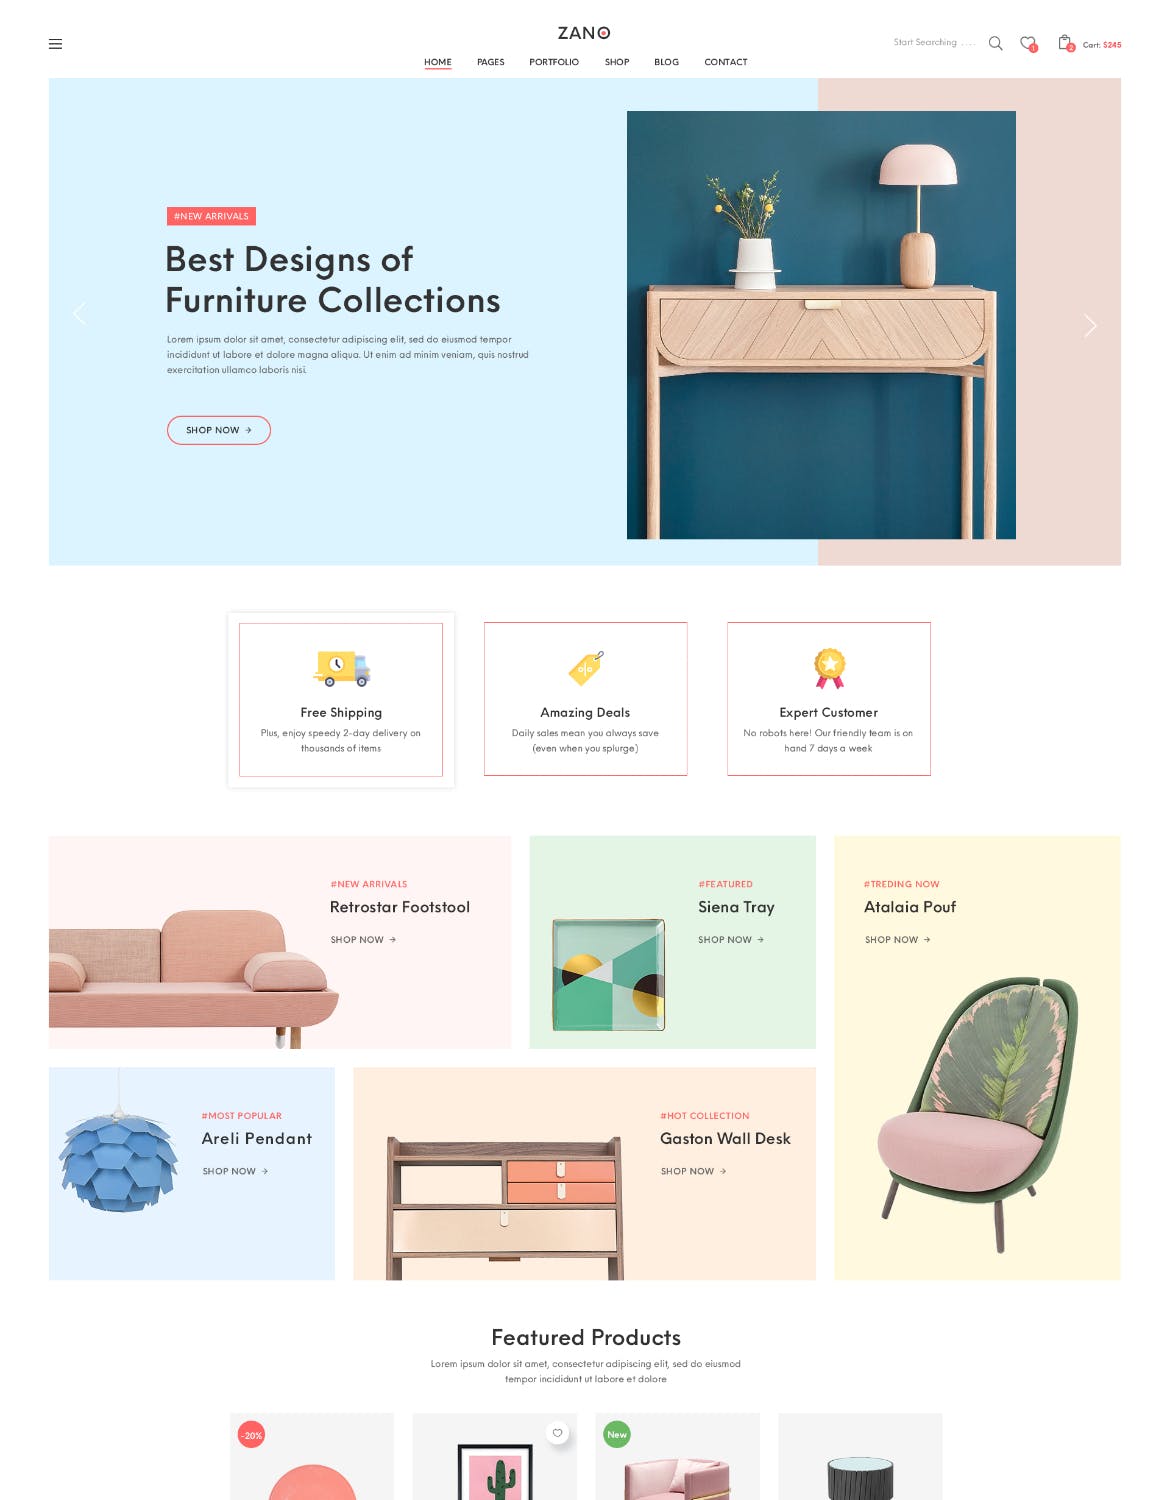 家具电子商务网上商城设计PSD模板 Zano | Furniture eCommerce PSD Template插图(1)